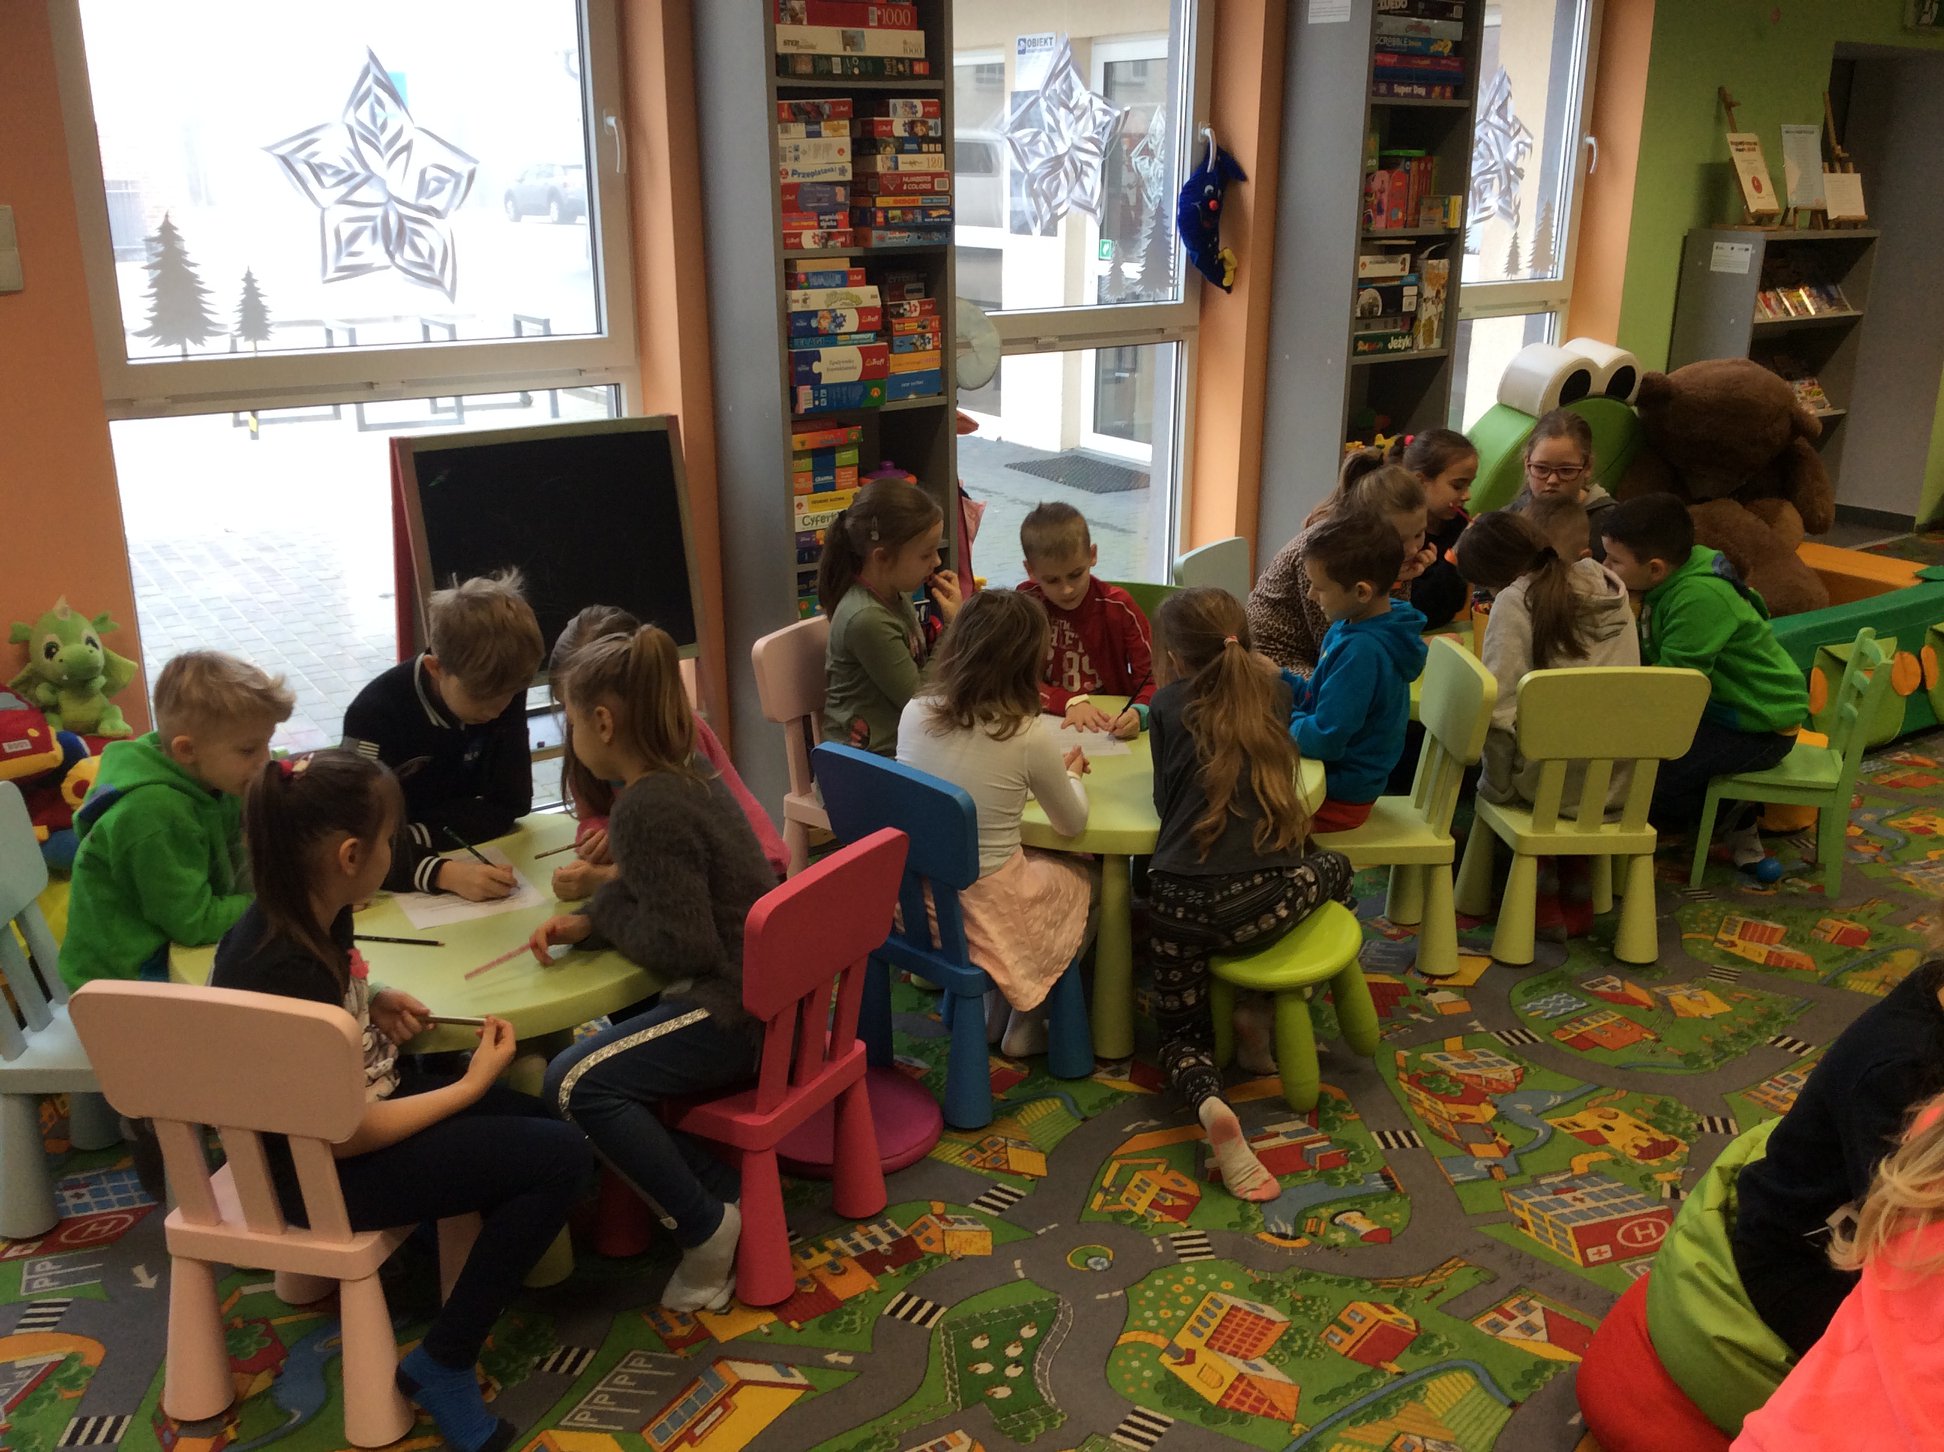 Wnętrze biblioteki, uczniowie klasy II C ze Szkoły Podstawowej nr 2 przybyli na lekcję biblioteczną na temat legend. Zajęcia prowadzi bibliotekarka Aleksandra Cybulska. Dzieci rozwiązują quiz na temat znajomości legend polskich.